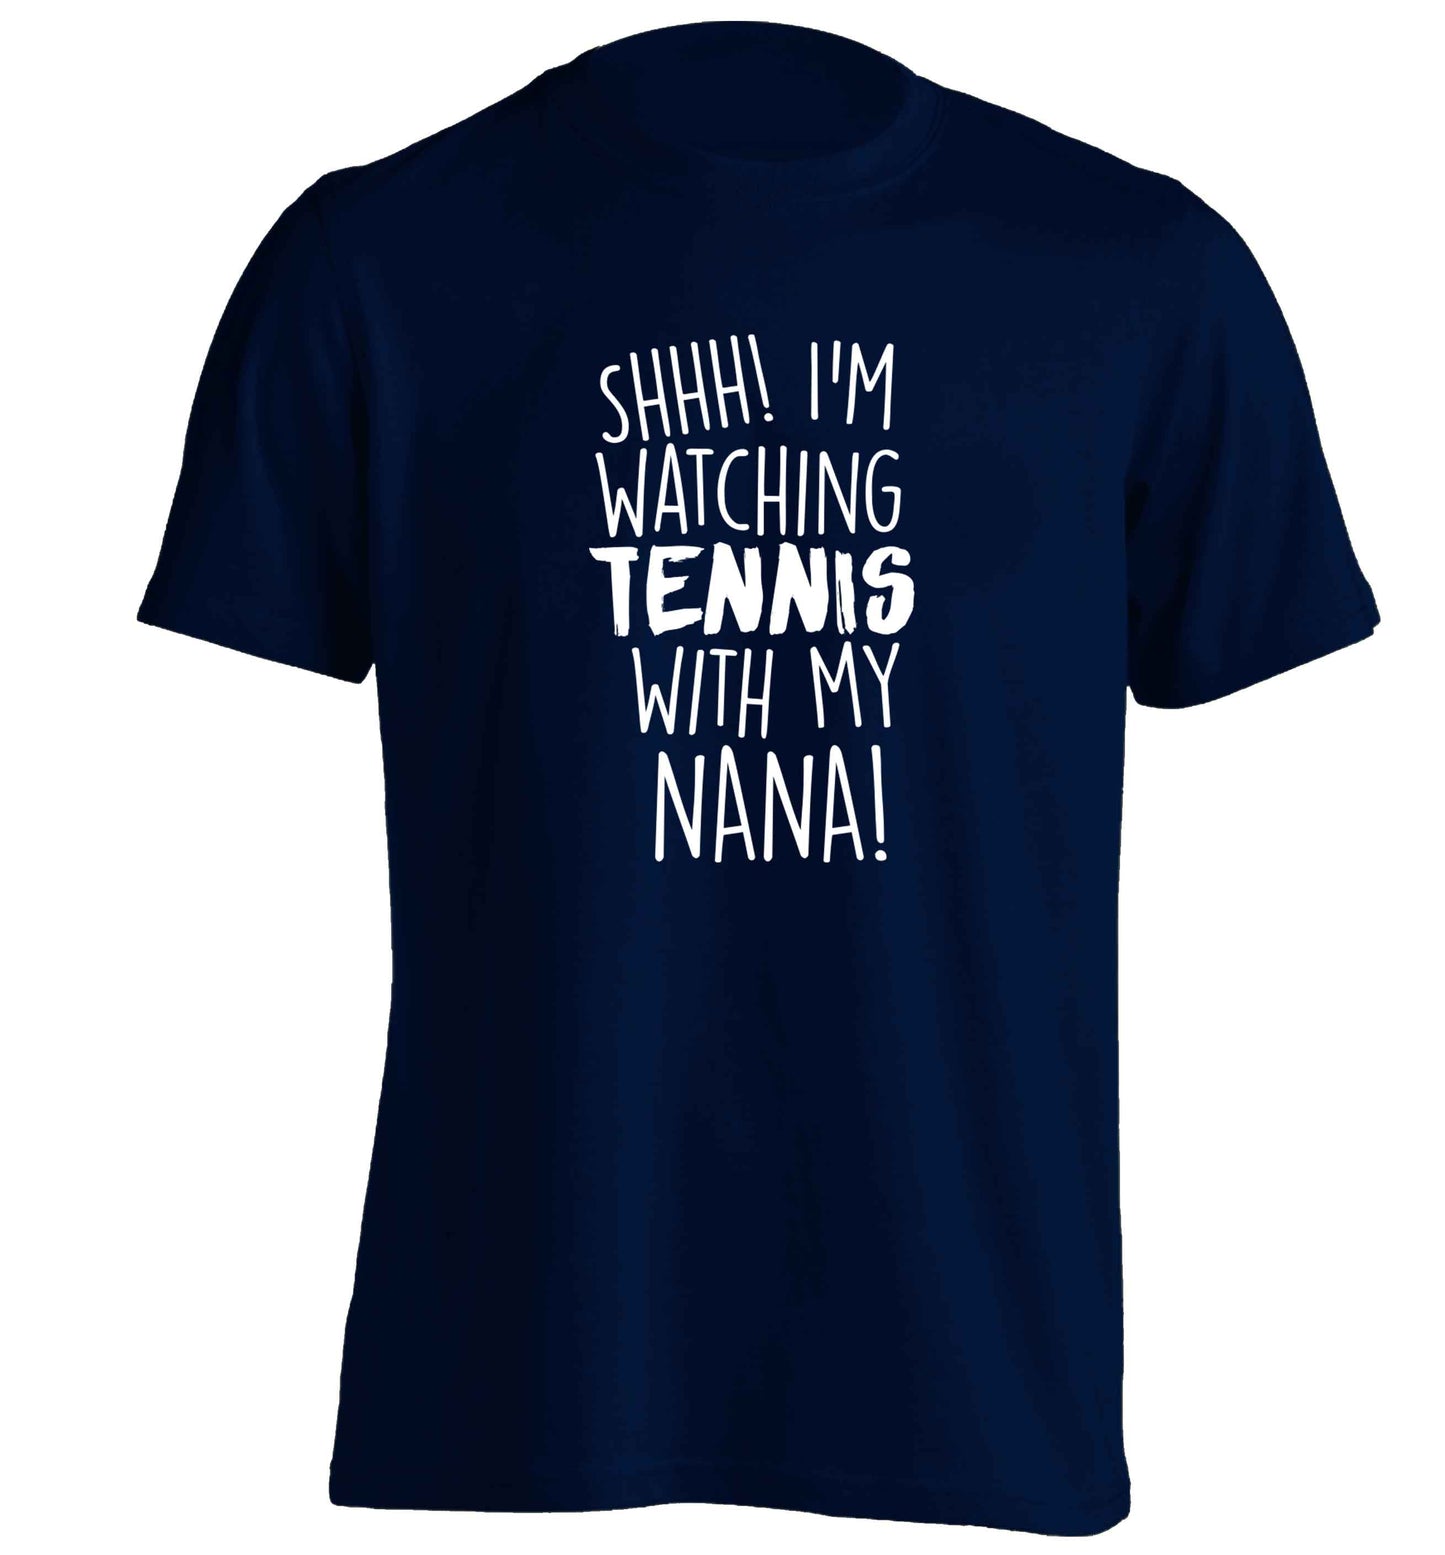 Shh! I'm watching tennis with my nana! adults unisex navy Tshirt 2XL